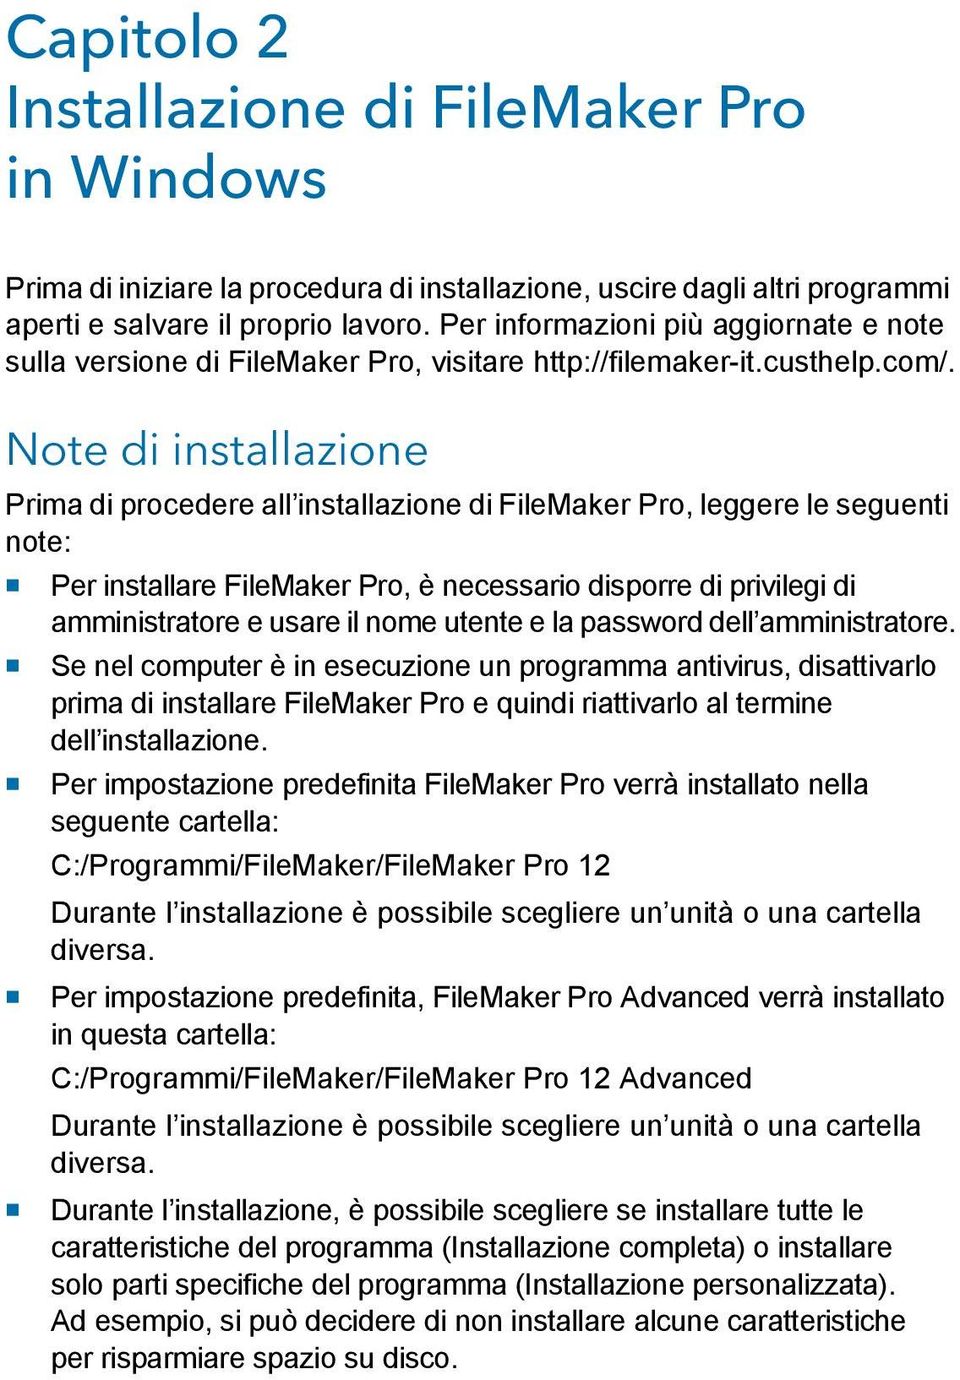 Note di installazione Prima di procedere all installazione di FileMaker Pro, leggere le seguenti note: 1 Per installare FileMaker Pro, è necessario disporre di privilegi di amministratore e usare il